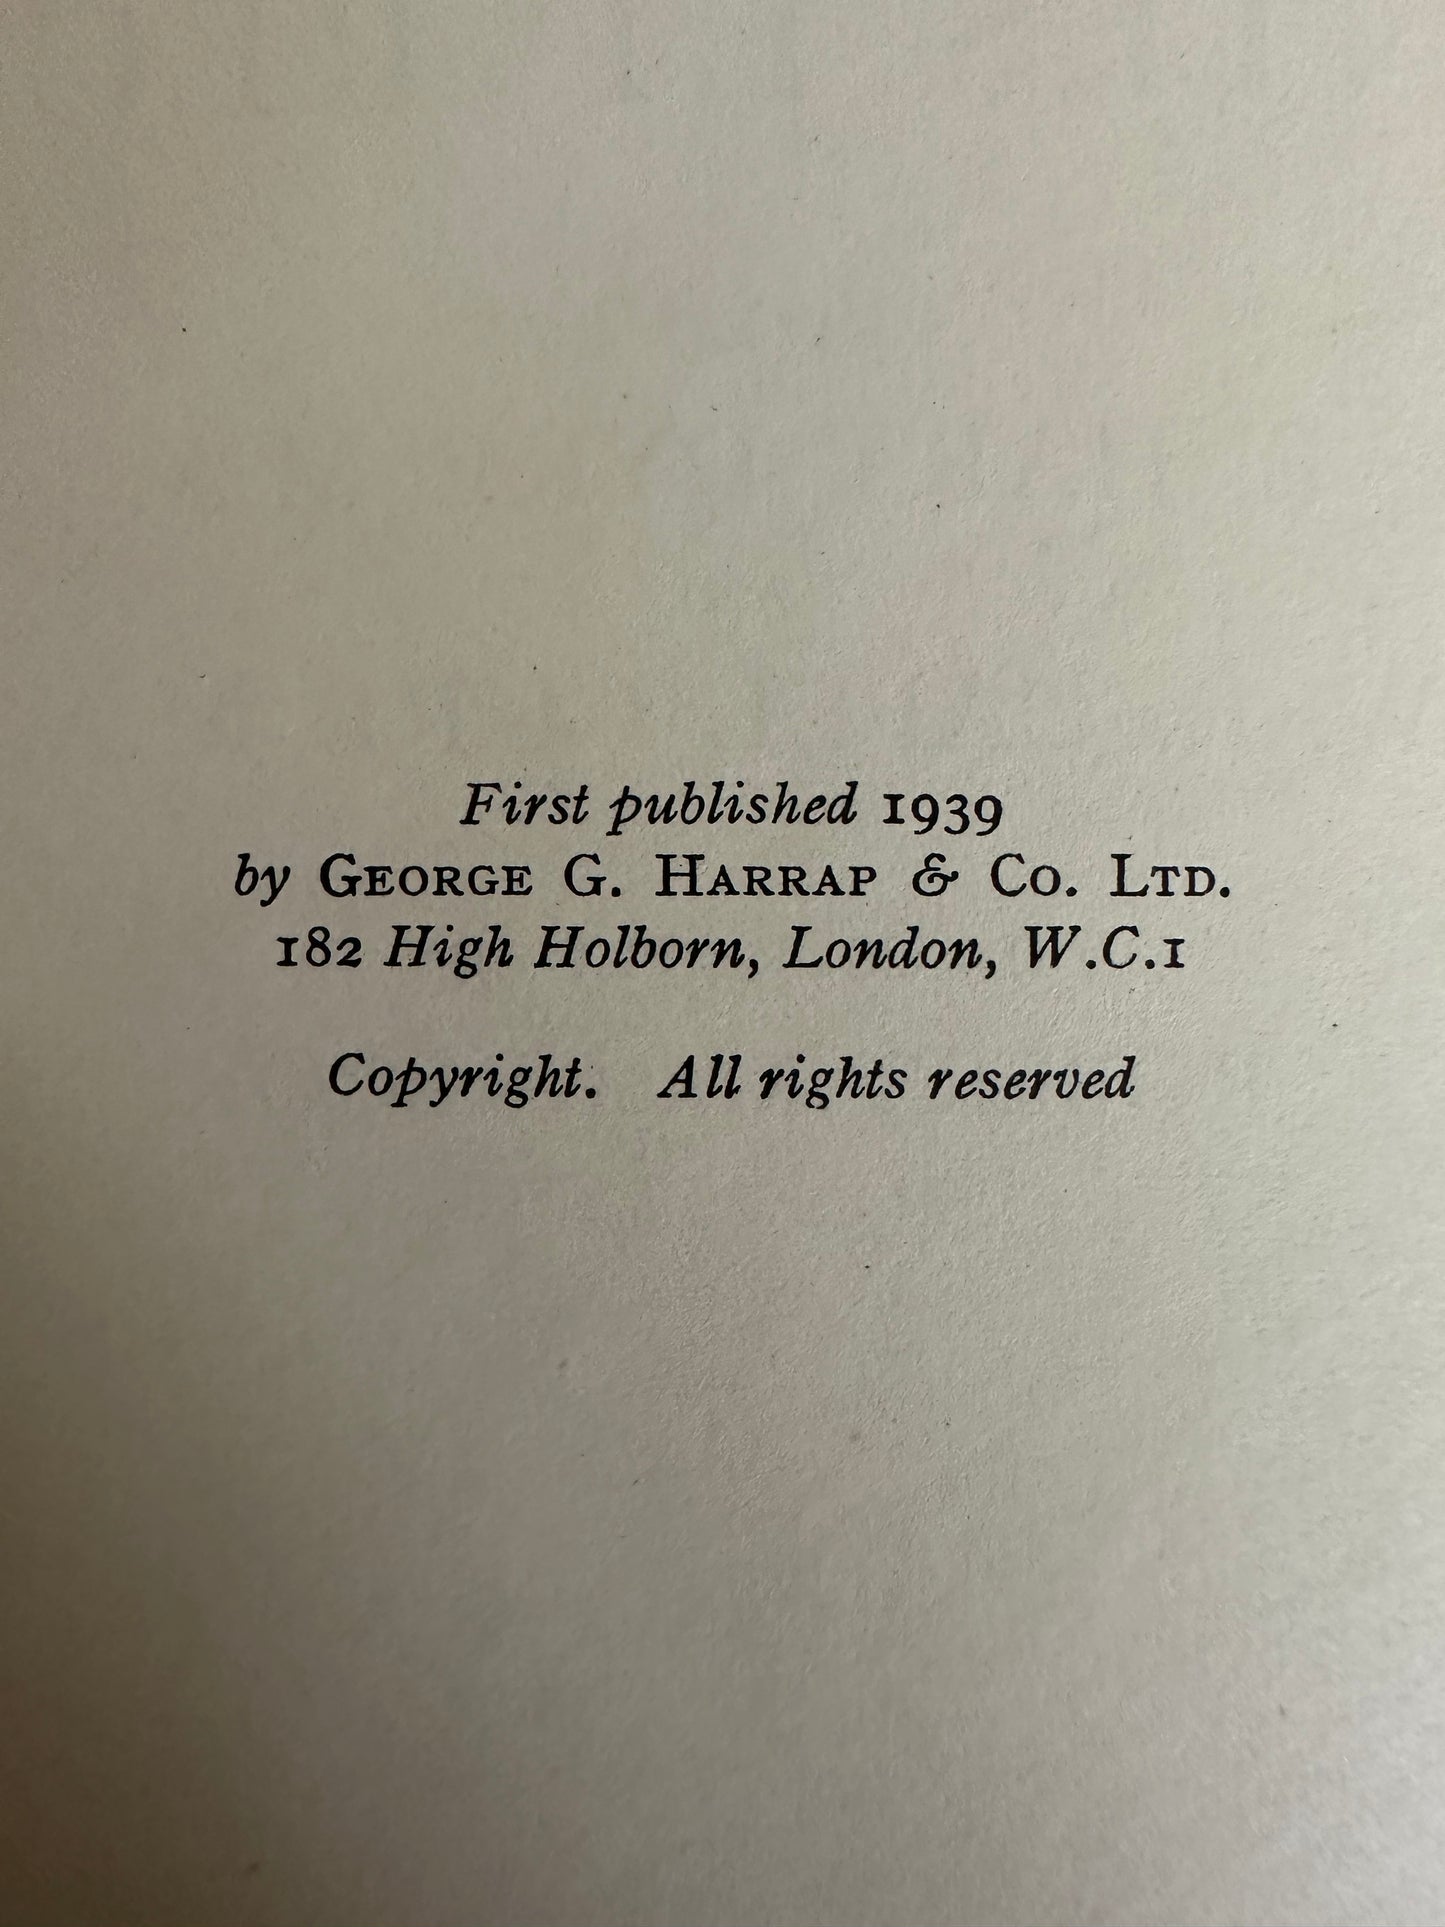 1939 Nouveaux Contes Et Récits (New Tales & Stories) - E. Hart Dyke & W. E. Capel Cure (Illust Robert MacGregor) George G. Harrap & Co Ltd